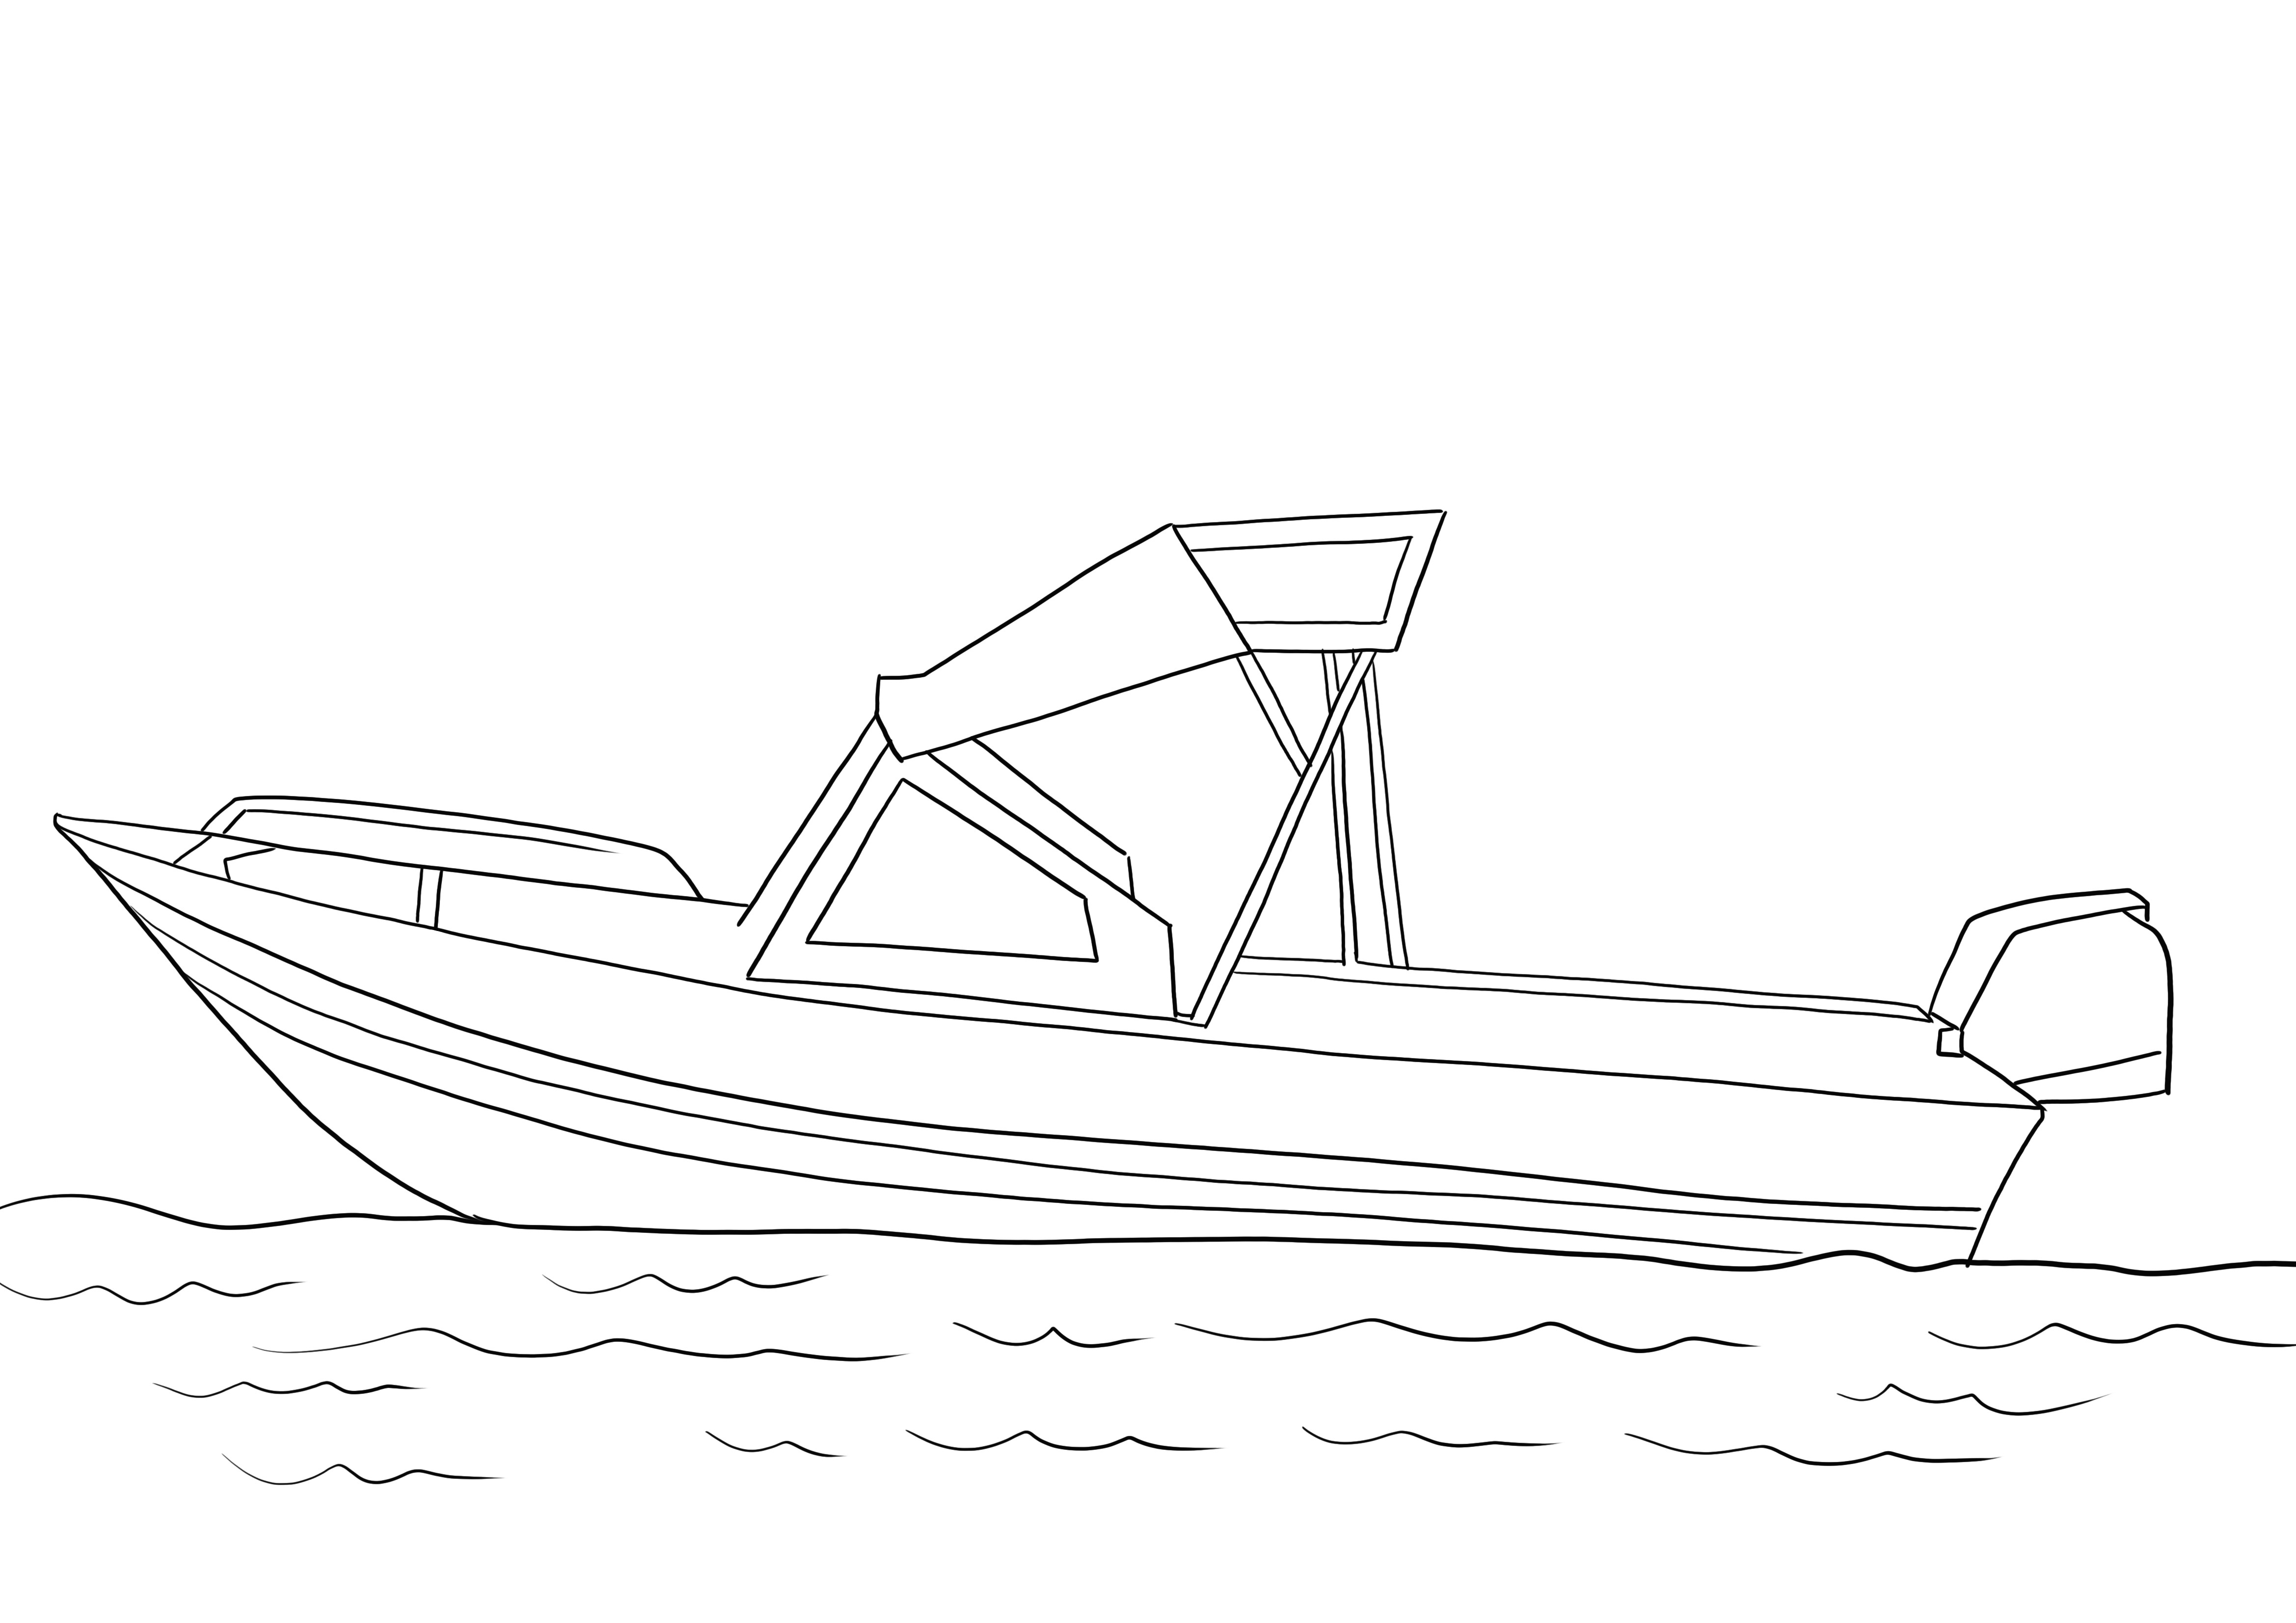 Desenho de Barco de Pesca grátis para imprimir ou baixar facilmente